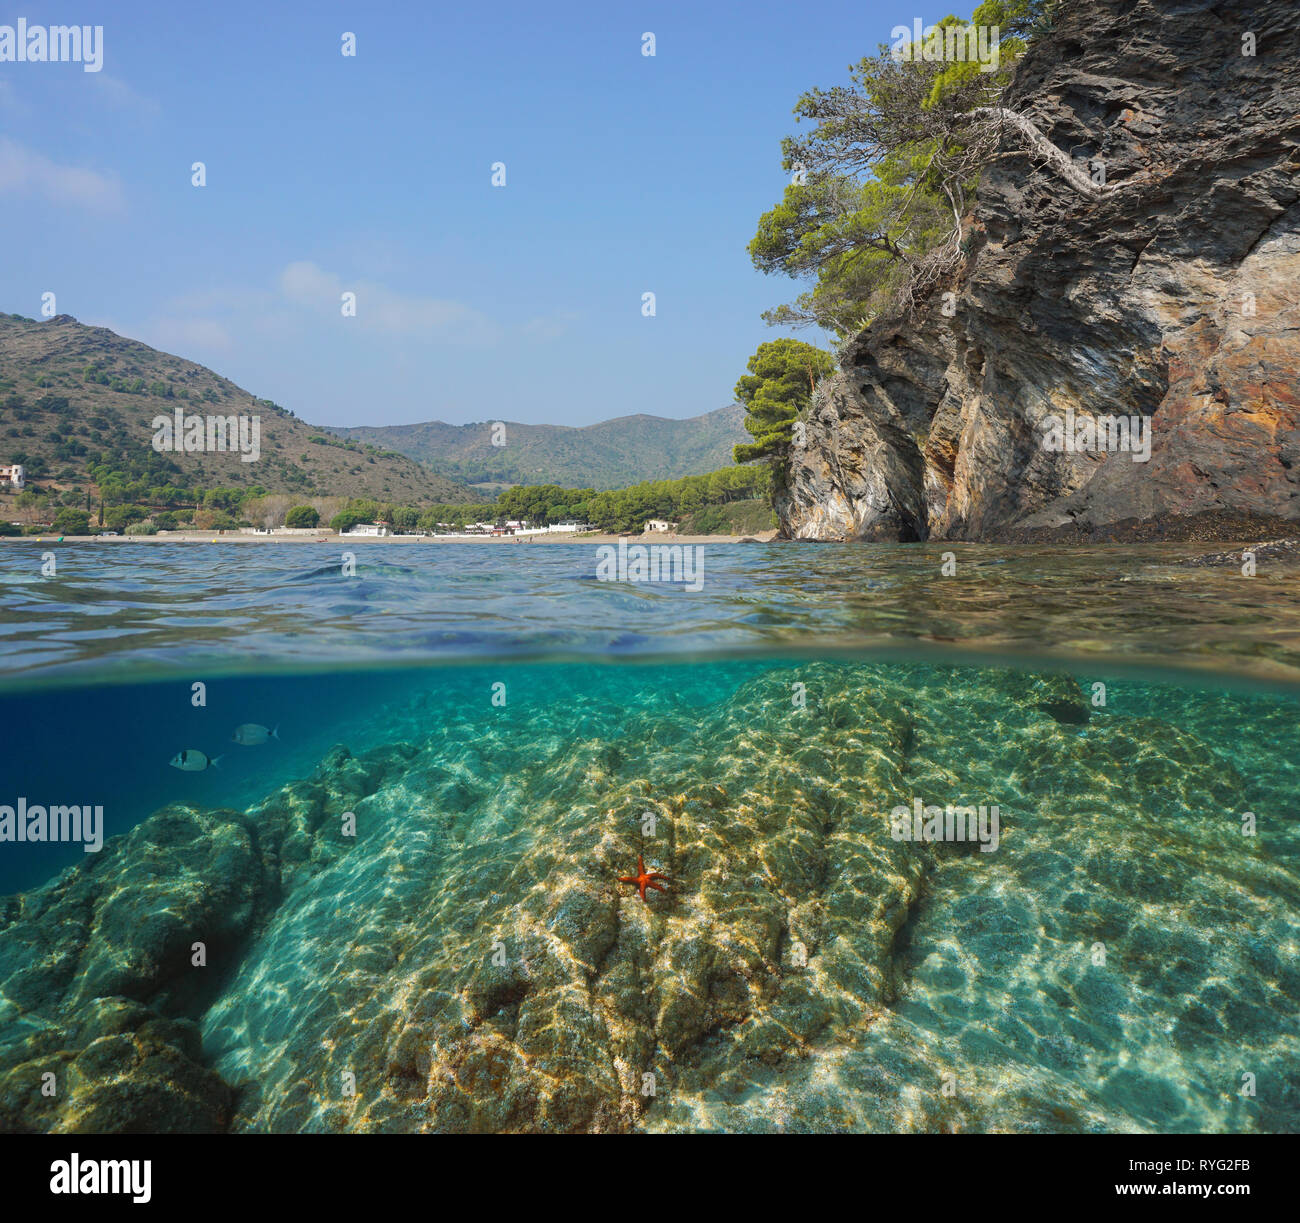 Spagna costa rocciosa vicino a Cala Montjoi, vista suddivisa a metà al di sopra e al di sotto di acqua, mare Mediterraneo, in Costa Brava Catalogna Foto Stock